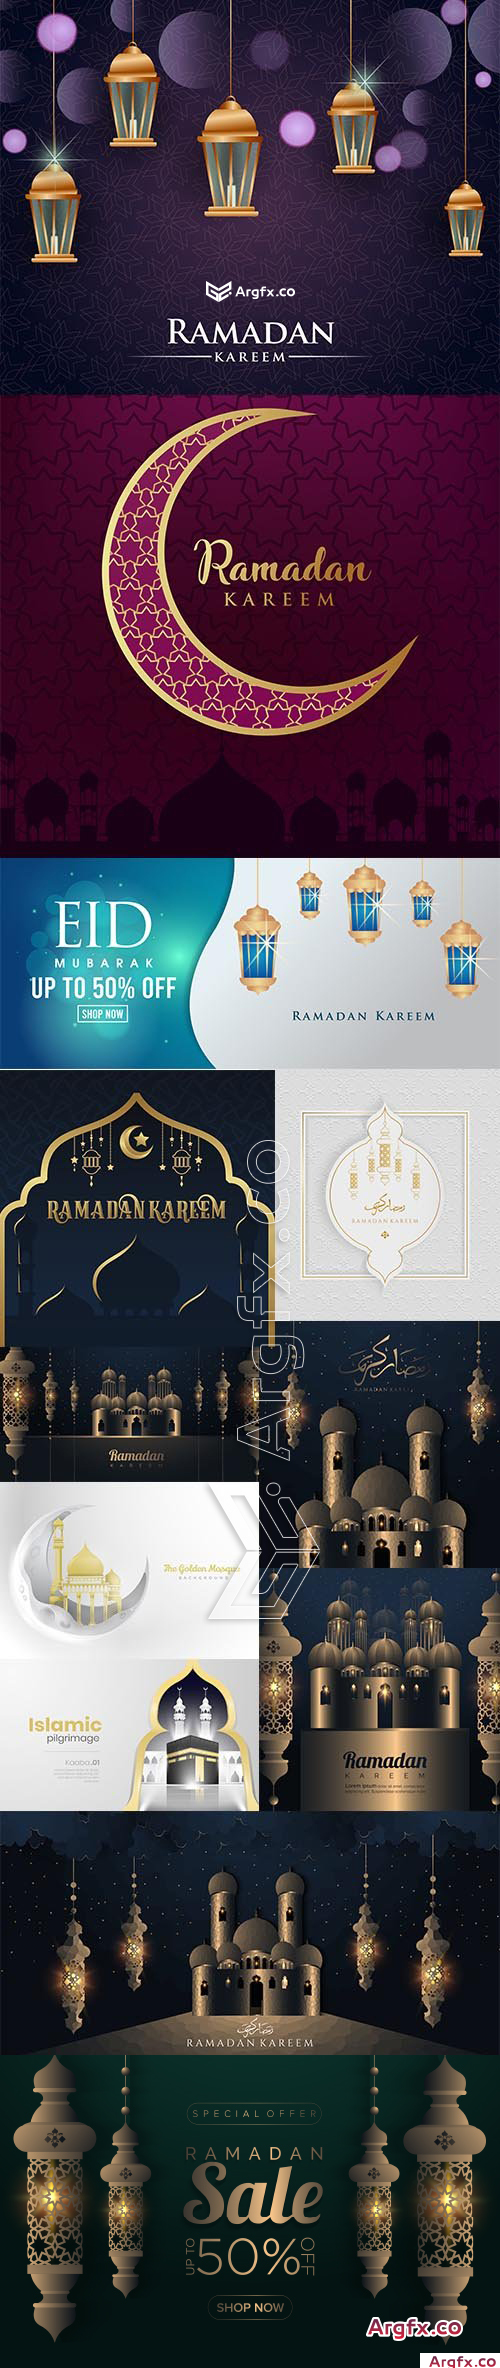 Ramadan Kareem Elegant Background Collection